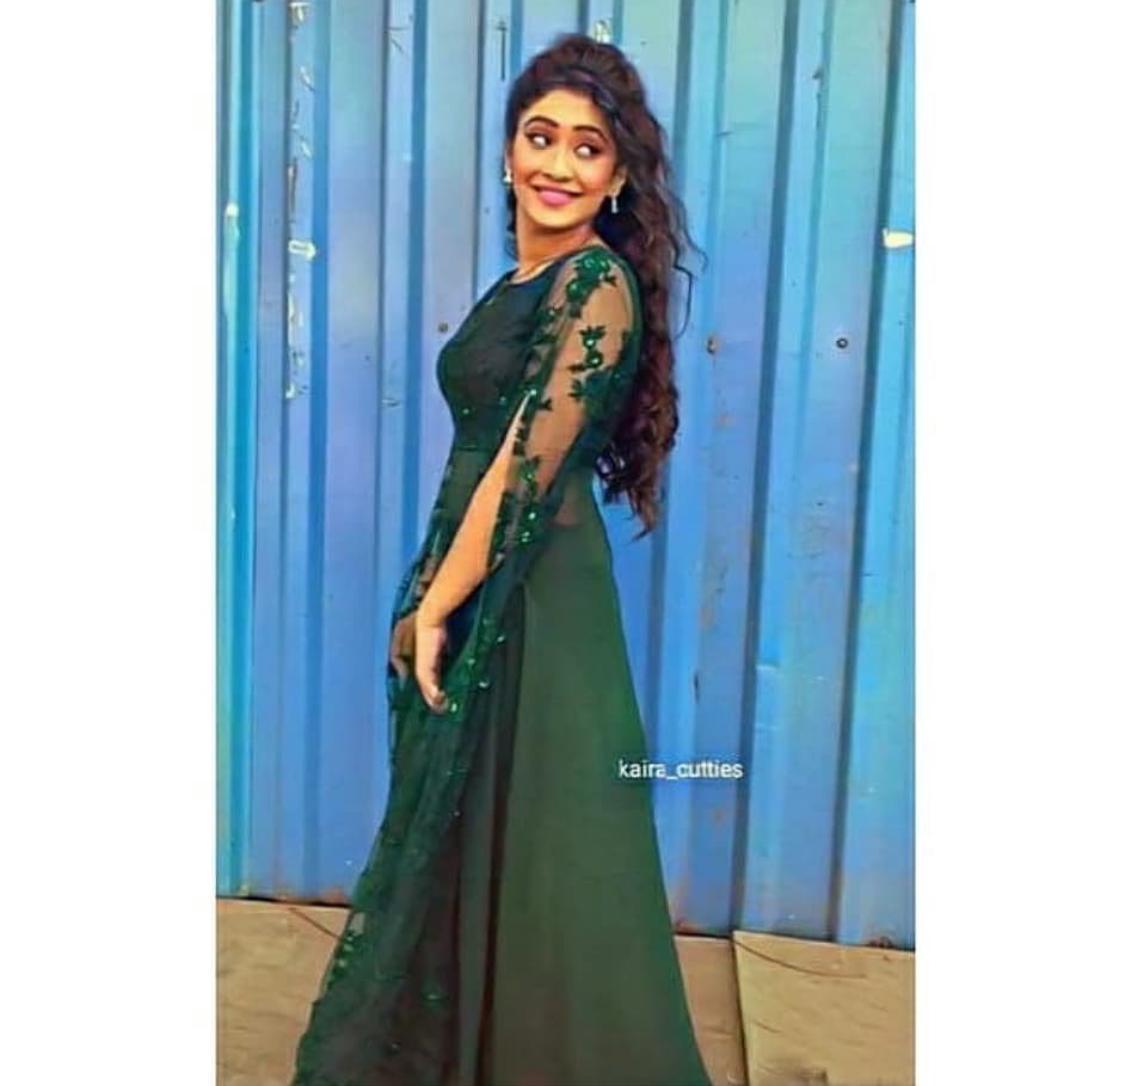 Shivangi Joshi inspired glam looks for date night | Zoom TV